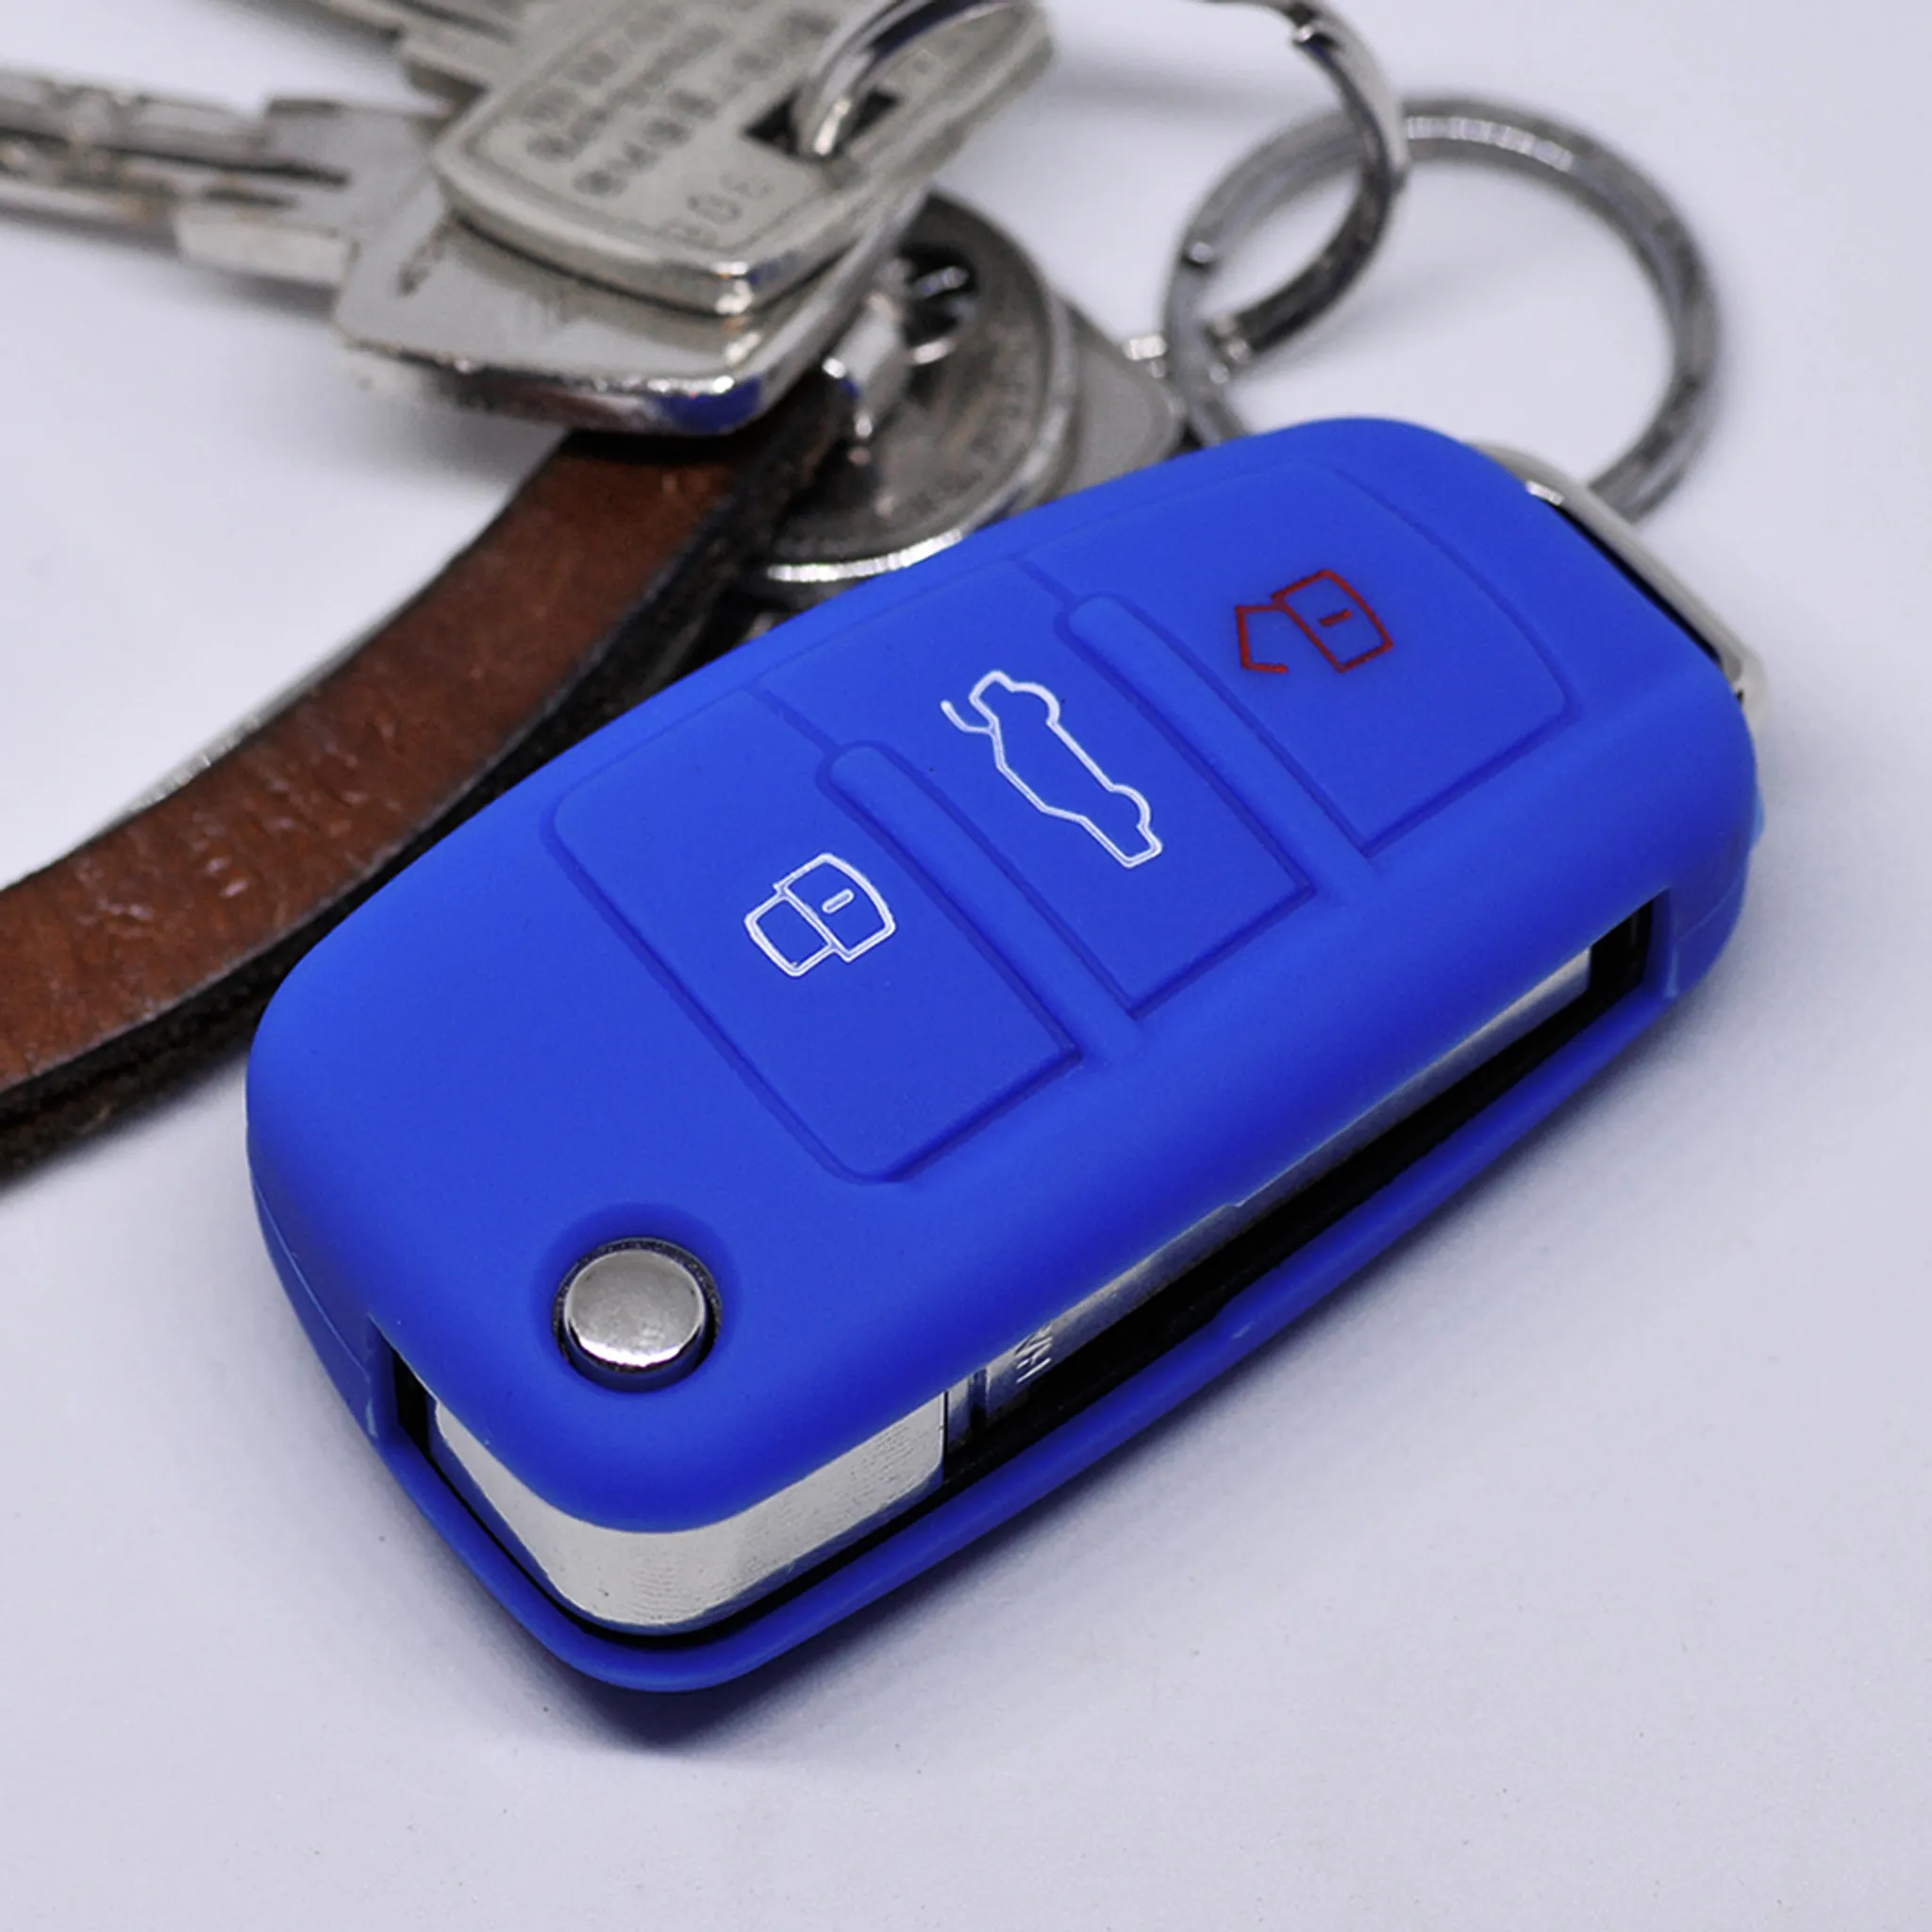 COVER für Audi Autoschlüssel Hülle Schutzhülle Schlüsselhülle für Aud